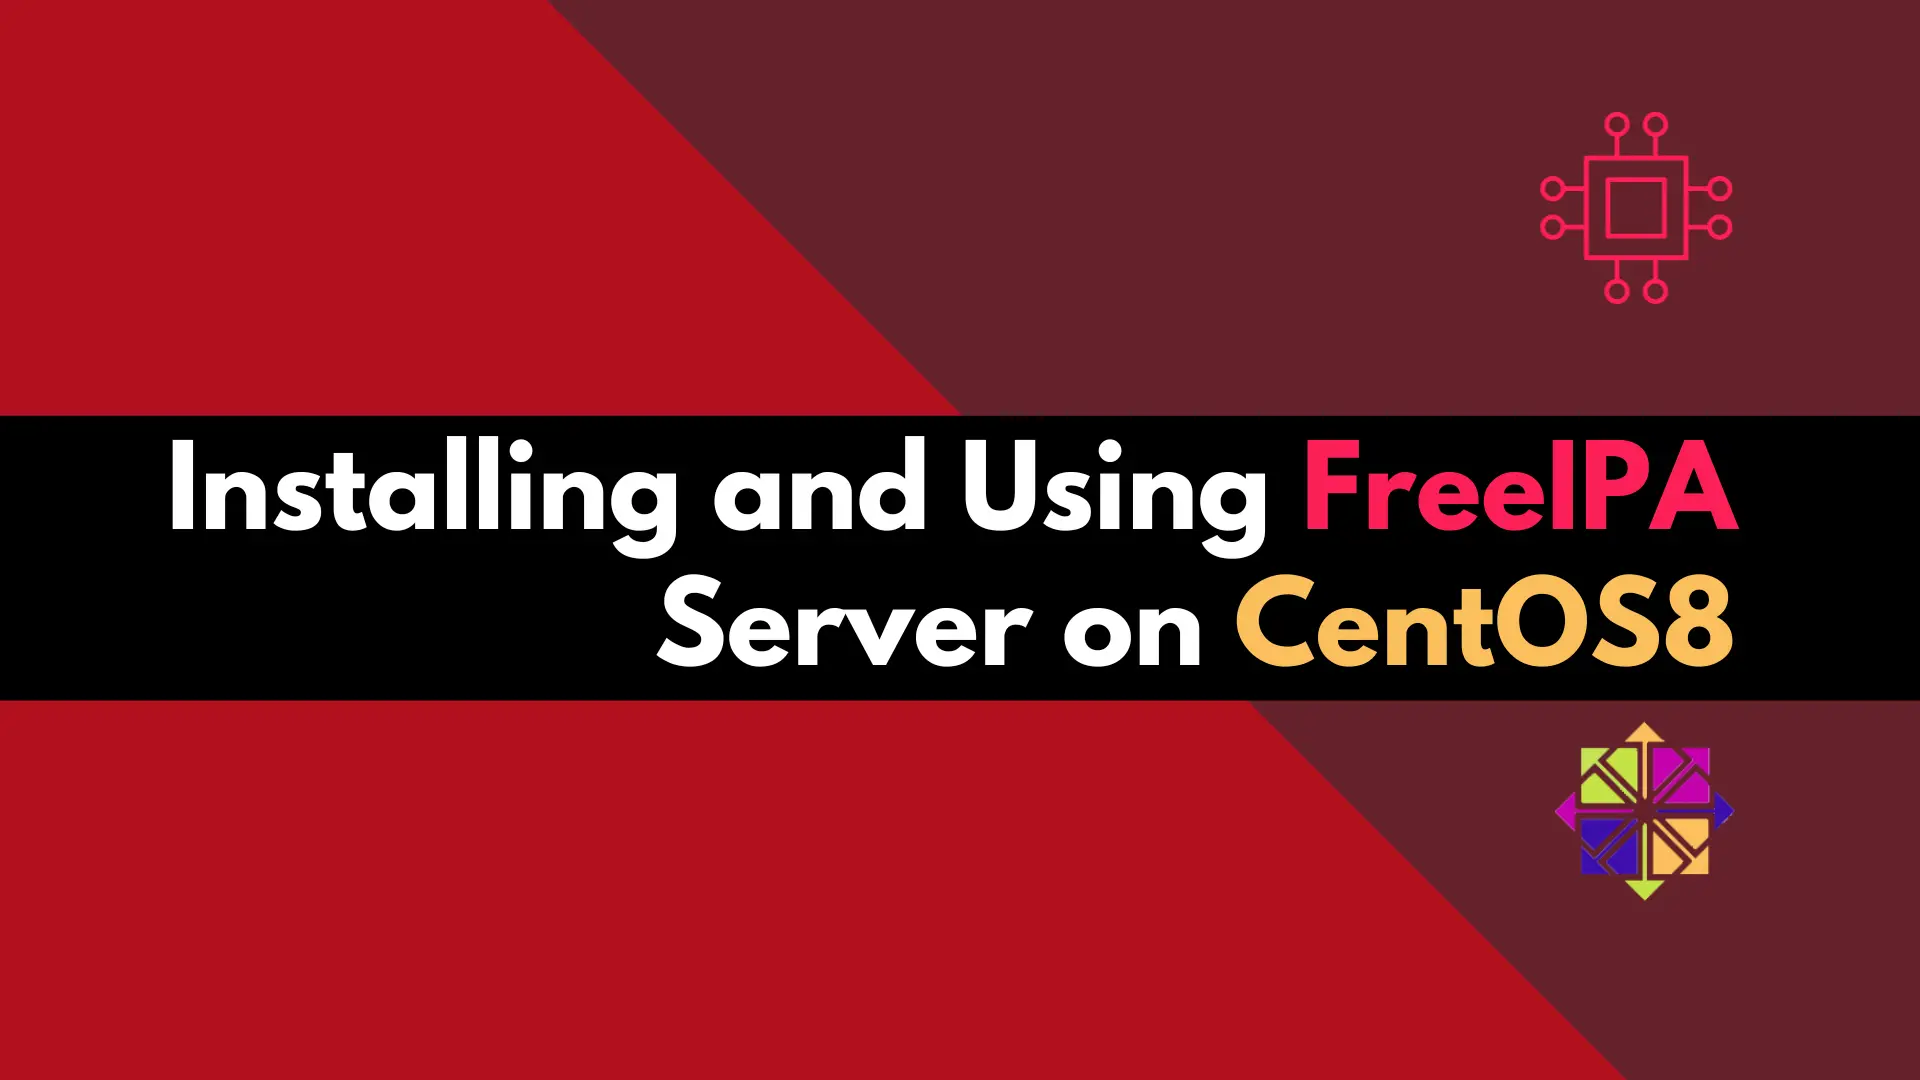 FreeIPA server on CentOS8